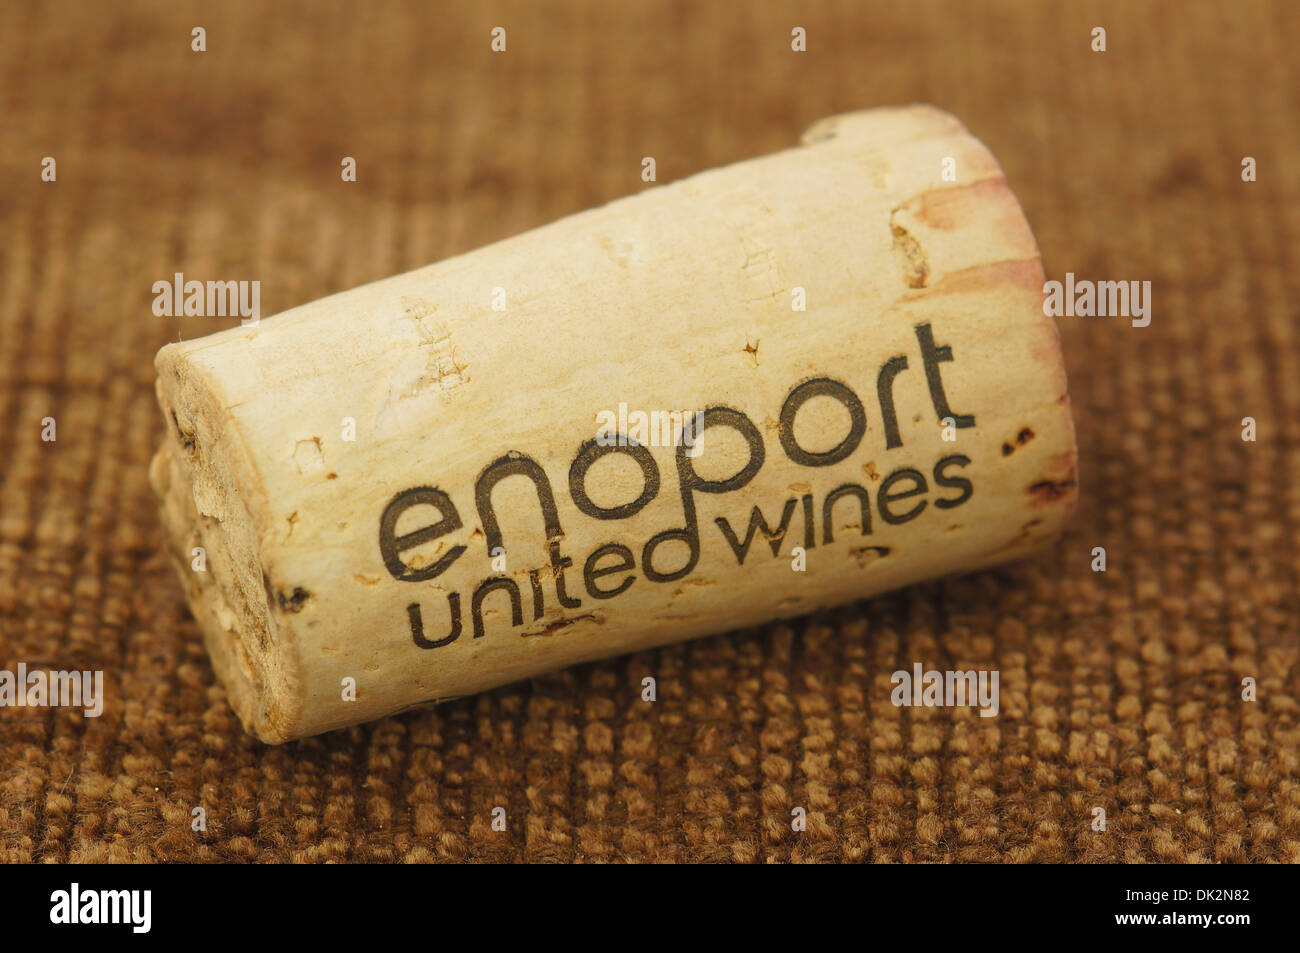 Nos Enoport Naciones Vinos Vino tapón de corcho Foto de stock